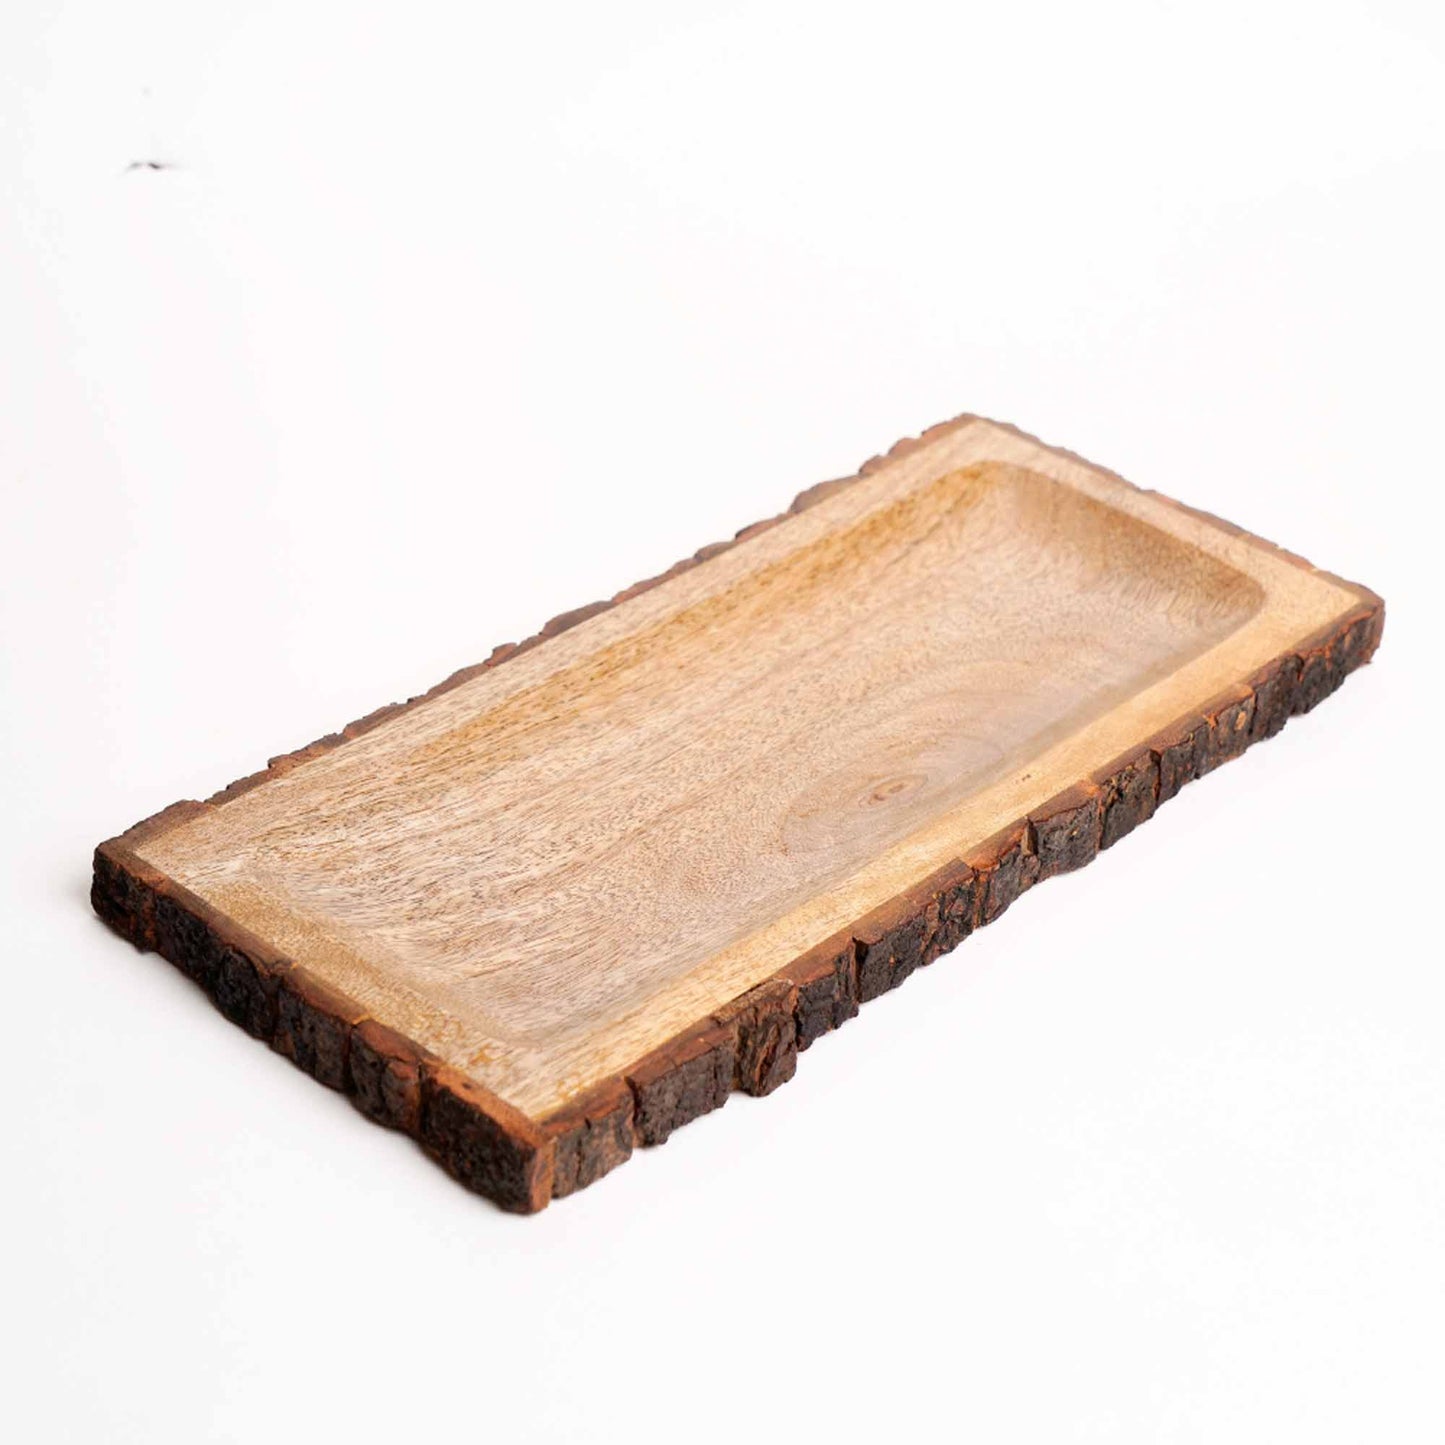 Bark Platter - Rectangular